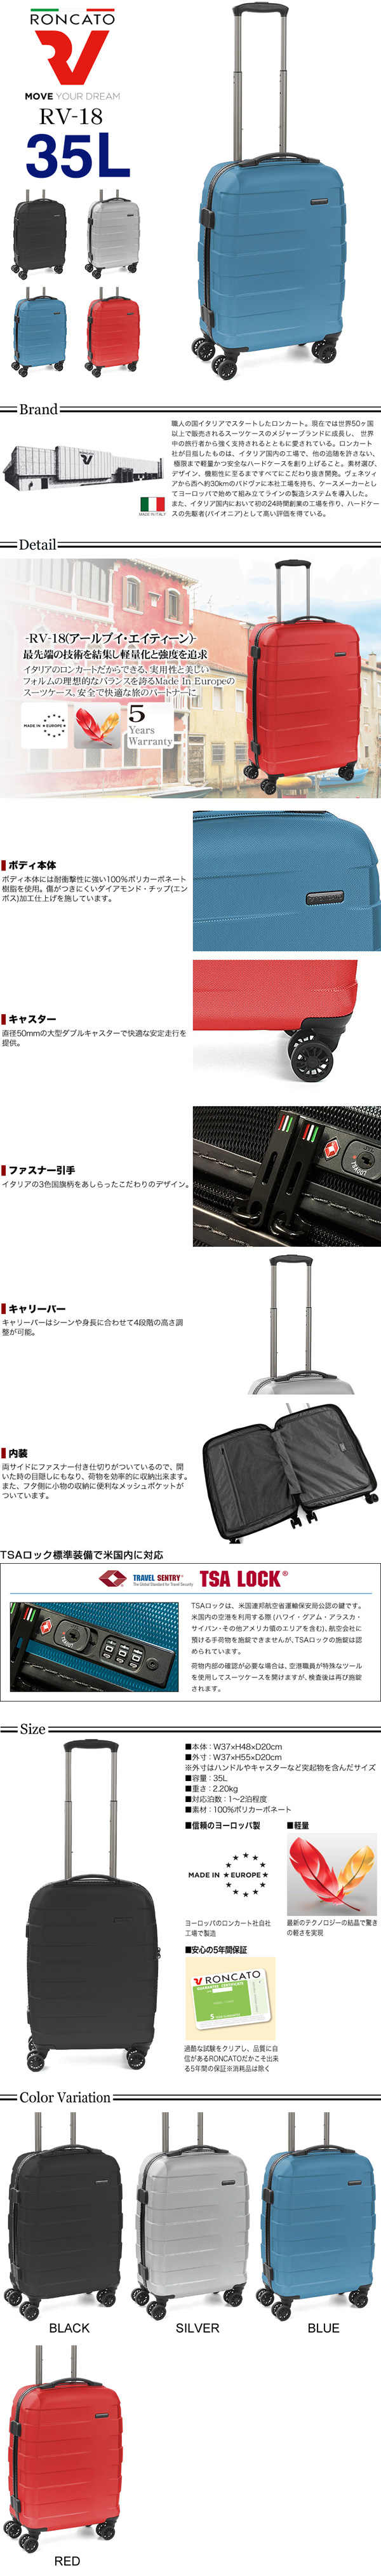 ロンカート RONCATO DOUBLE 正規品 スーツケース 機内持ち込み TSAロック サイズ ジッパー S バックパック キャリーバッグ  キャリーケース ファスナー 軽量 ビジネス 5147 拡張機能 イタリア製 C PREMIUM os0a104